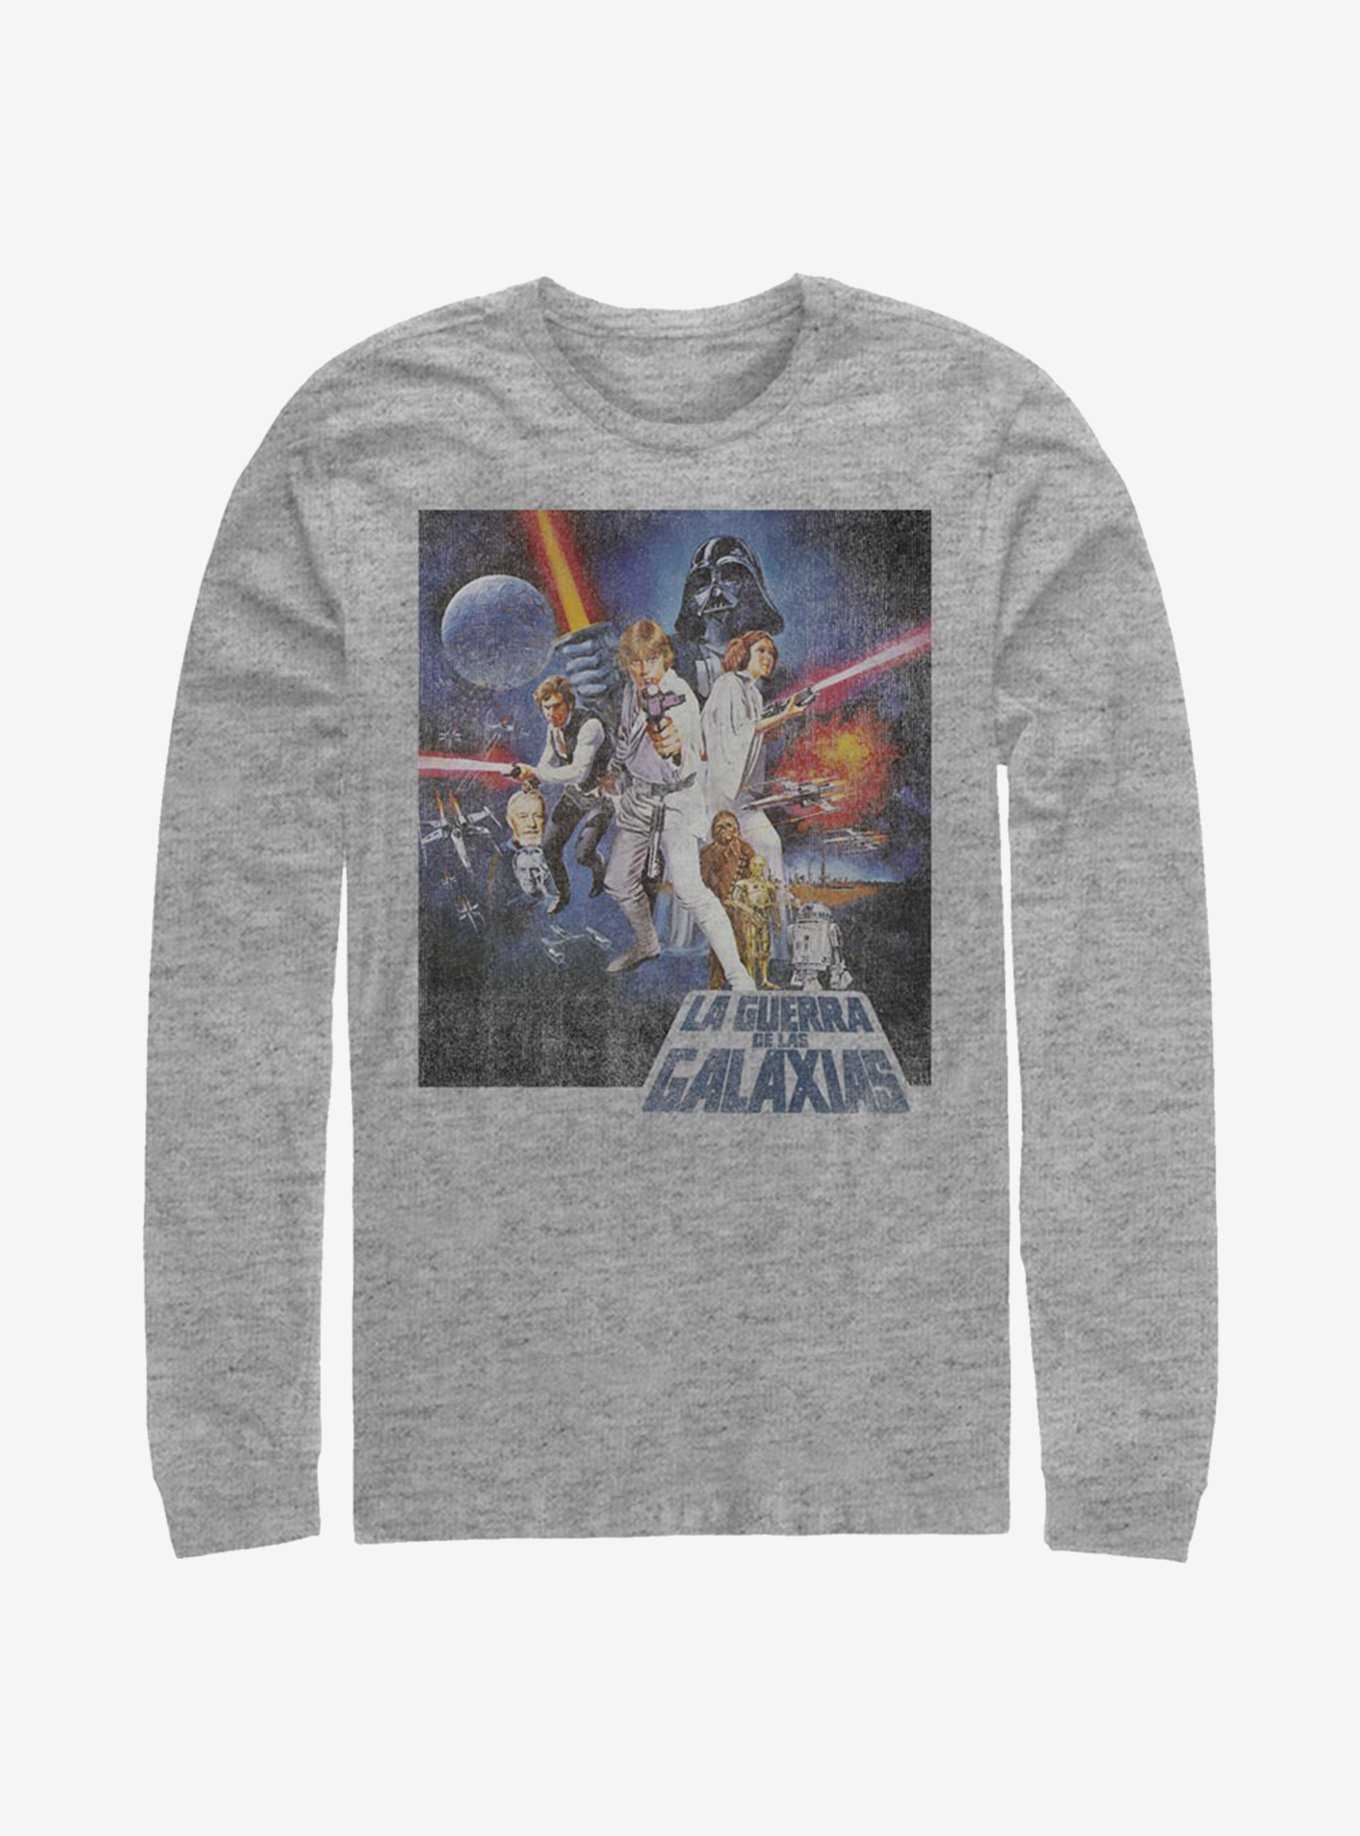 Star Wars Episode IV A New Hope La Guerra De Las Galaxias Poster Long-Sleeve T-Shirt, , hi-res